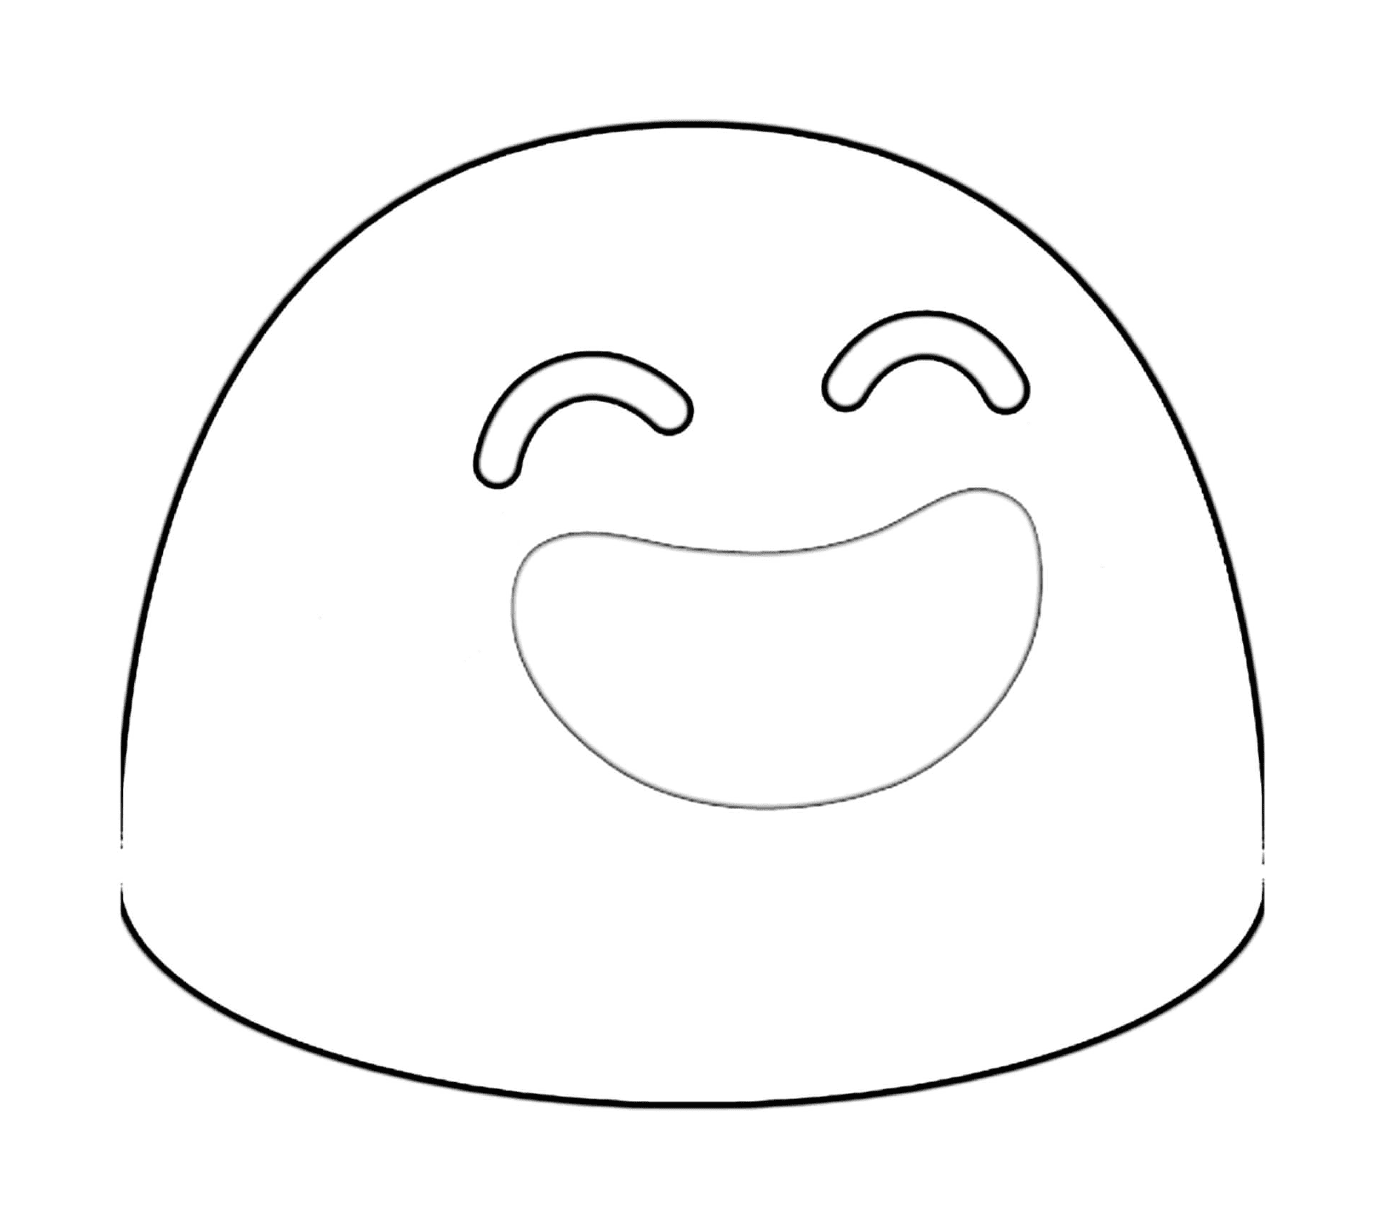  Um rosto desenhado com um grande sorriso 